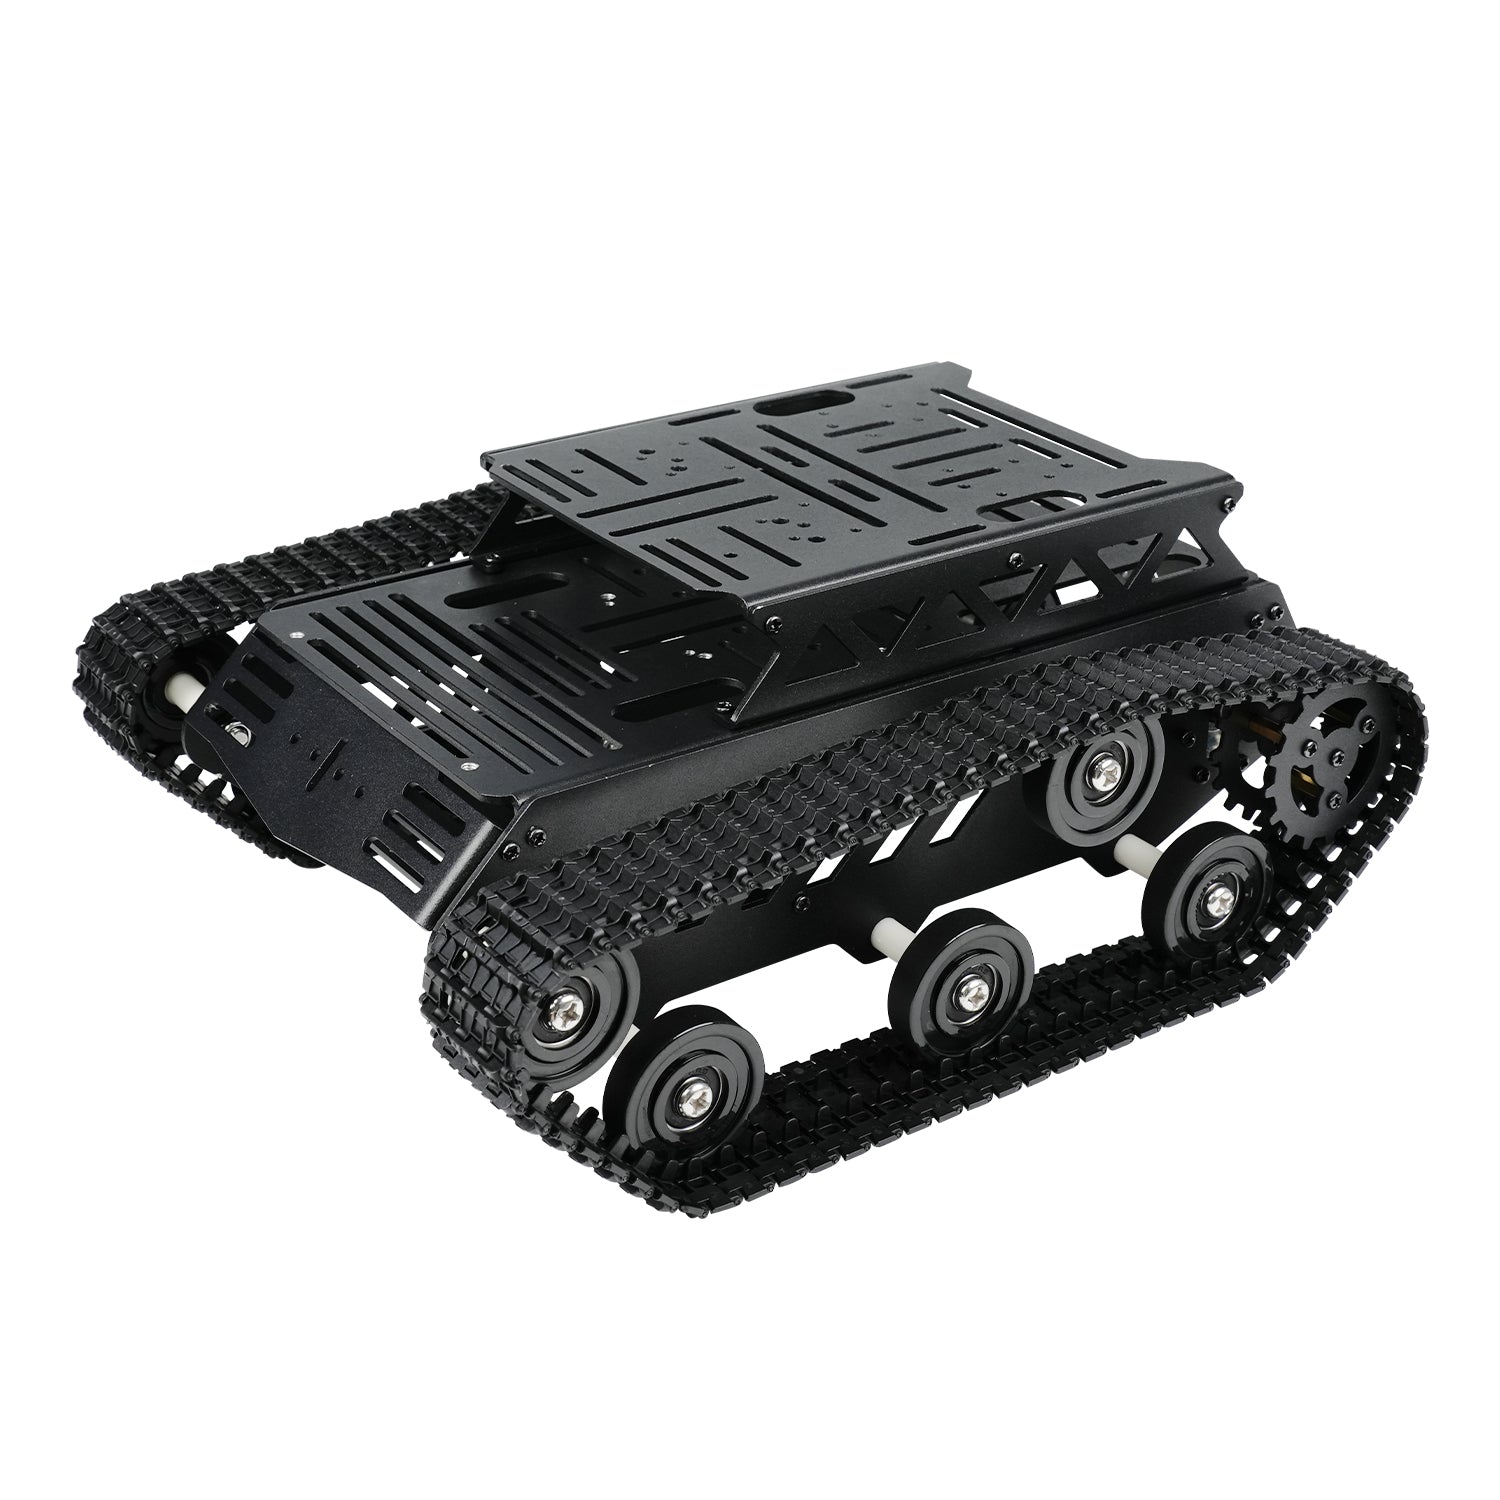 Skyldig Eksklusiv højdepunkt Hiwonder Tank Car Chassis Kit Shock Absorbing Robot with 2WD Motors fo